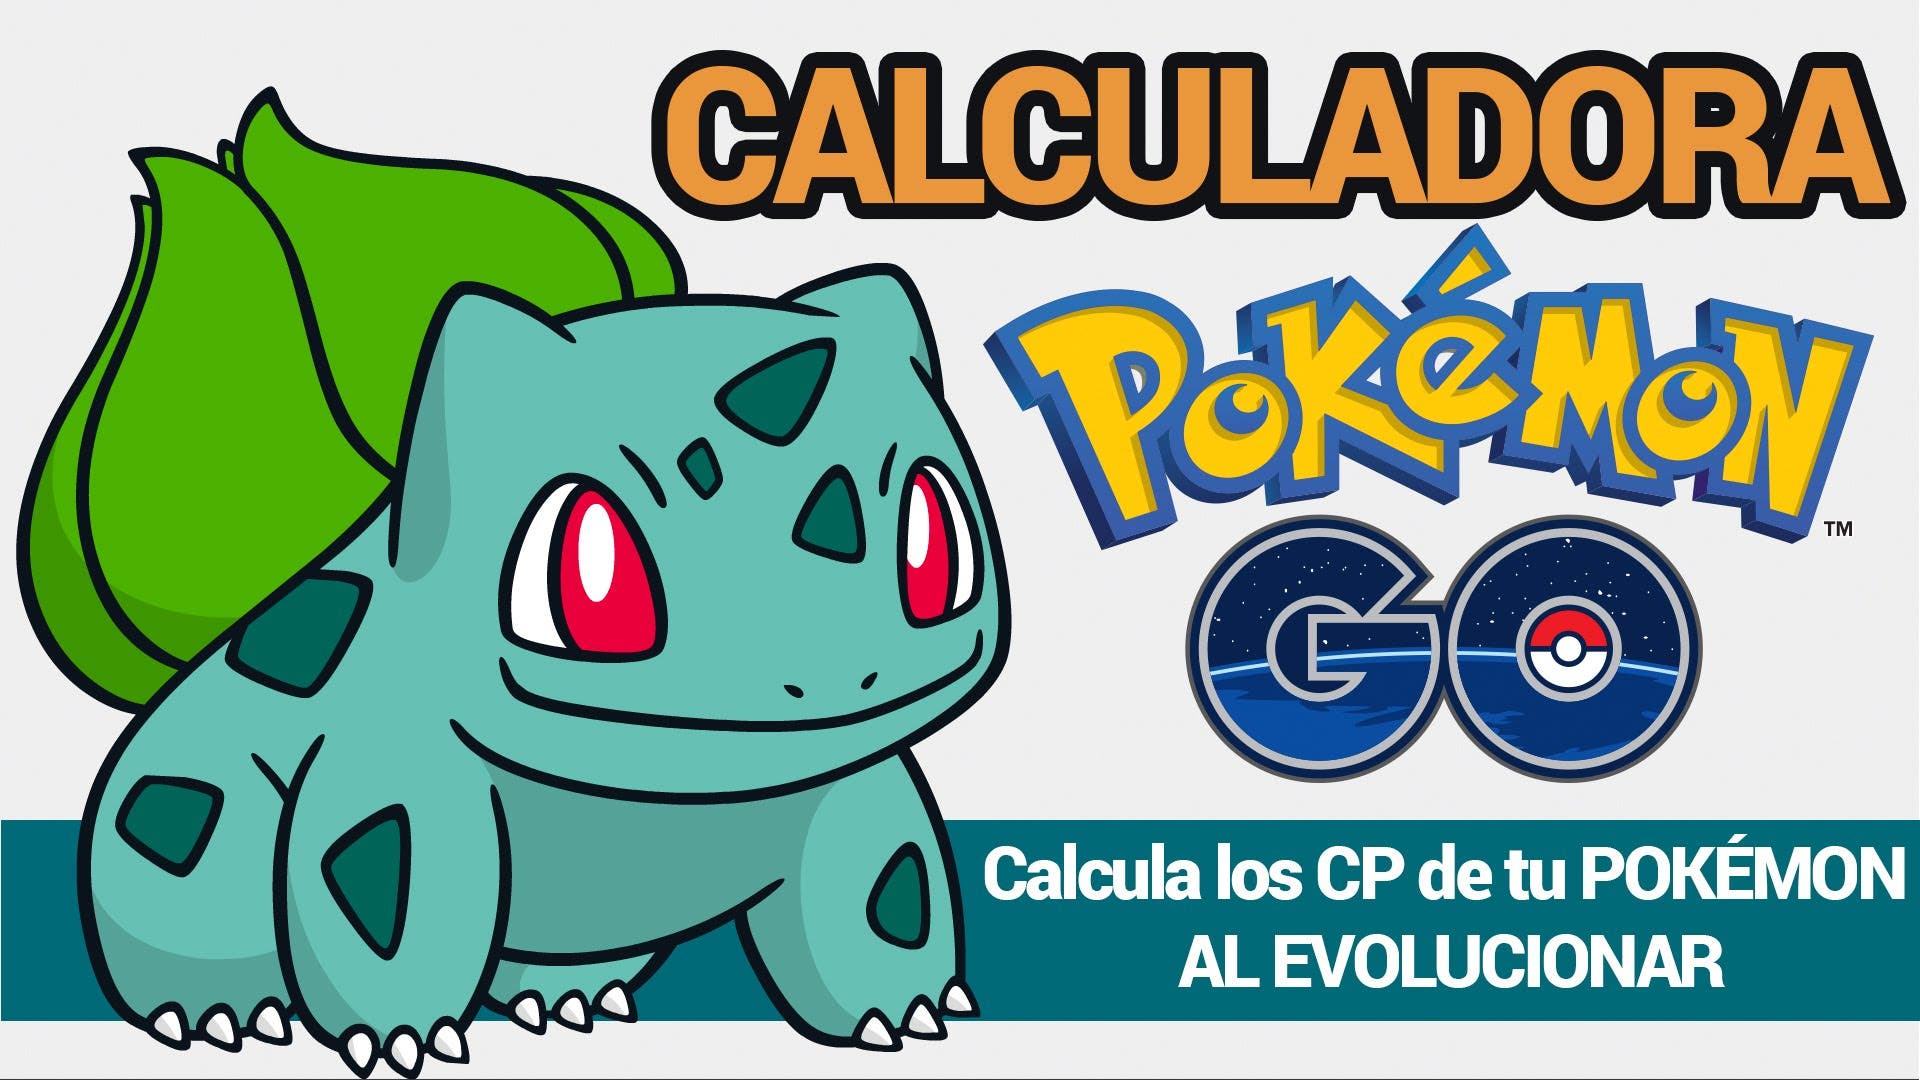 Crean una calculadora de ‘Pokémon GO’ para averiguar el PC de los Pokémon al evolucionar